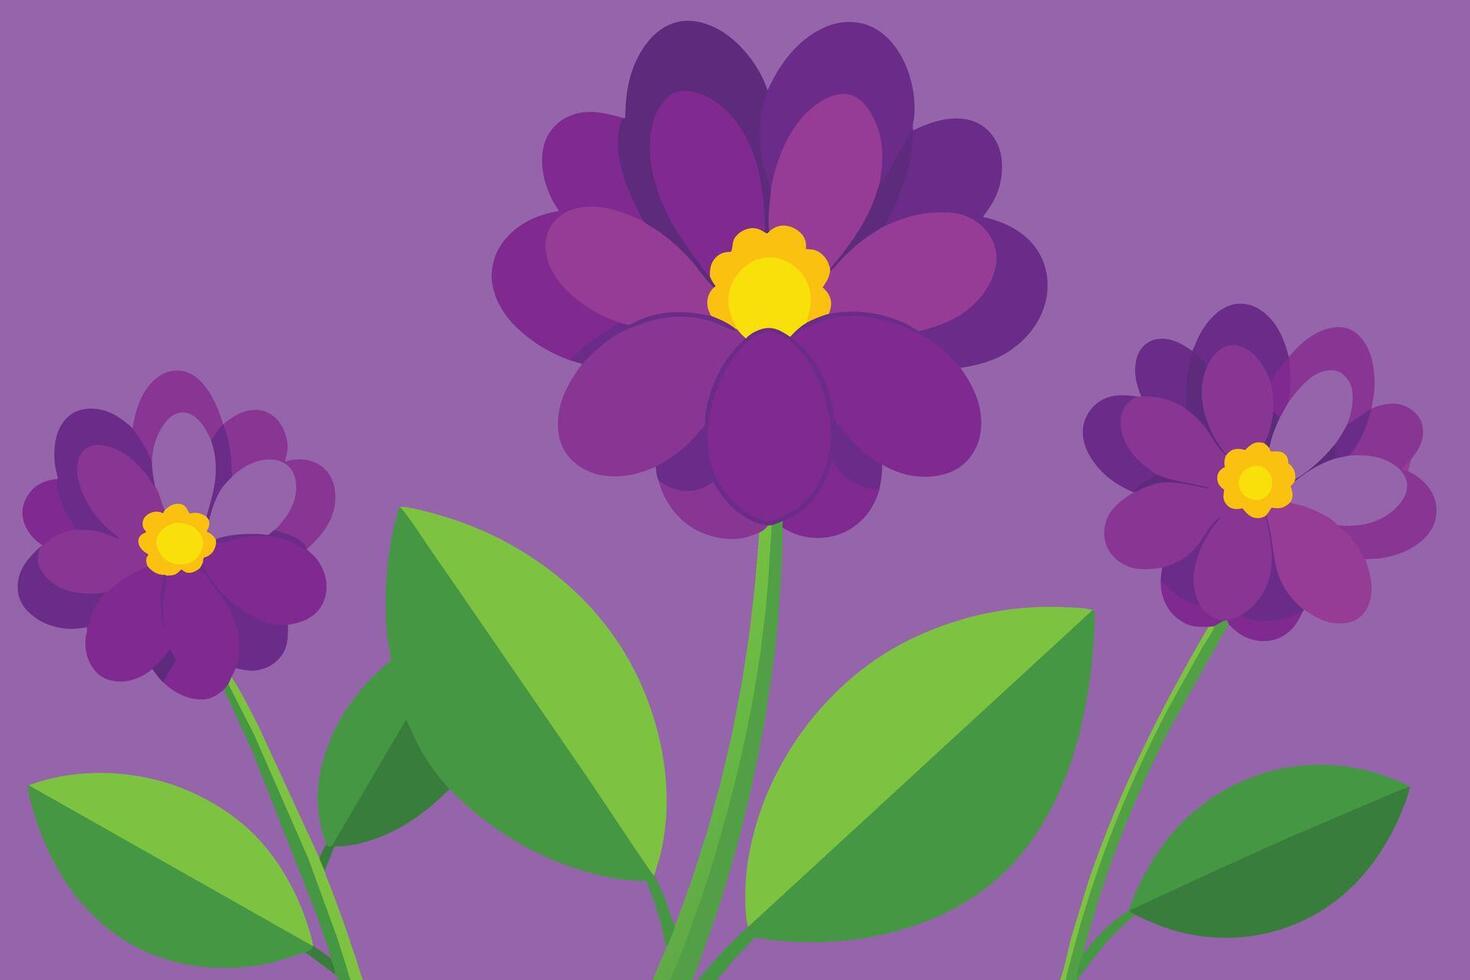 vector antecedentes con púrpura flores